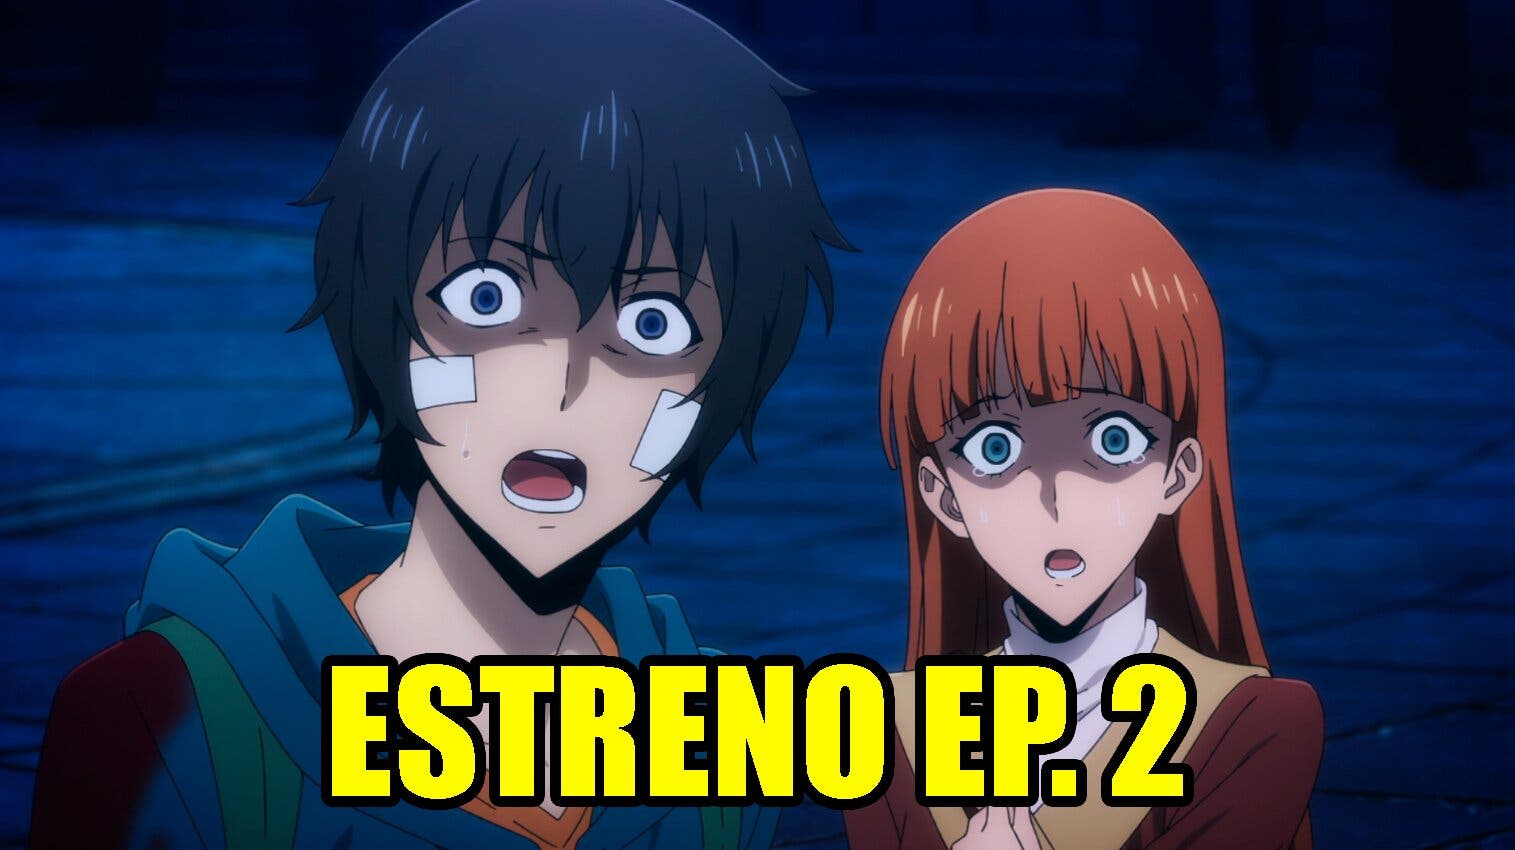 Solo leveling capítulo 5 en español: cuándo se estrena, horarios y link del  próximo episodio del anime